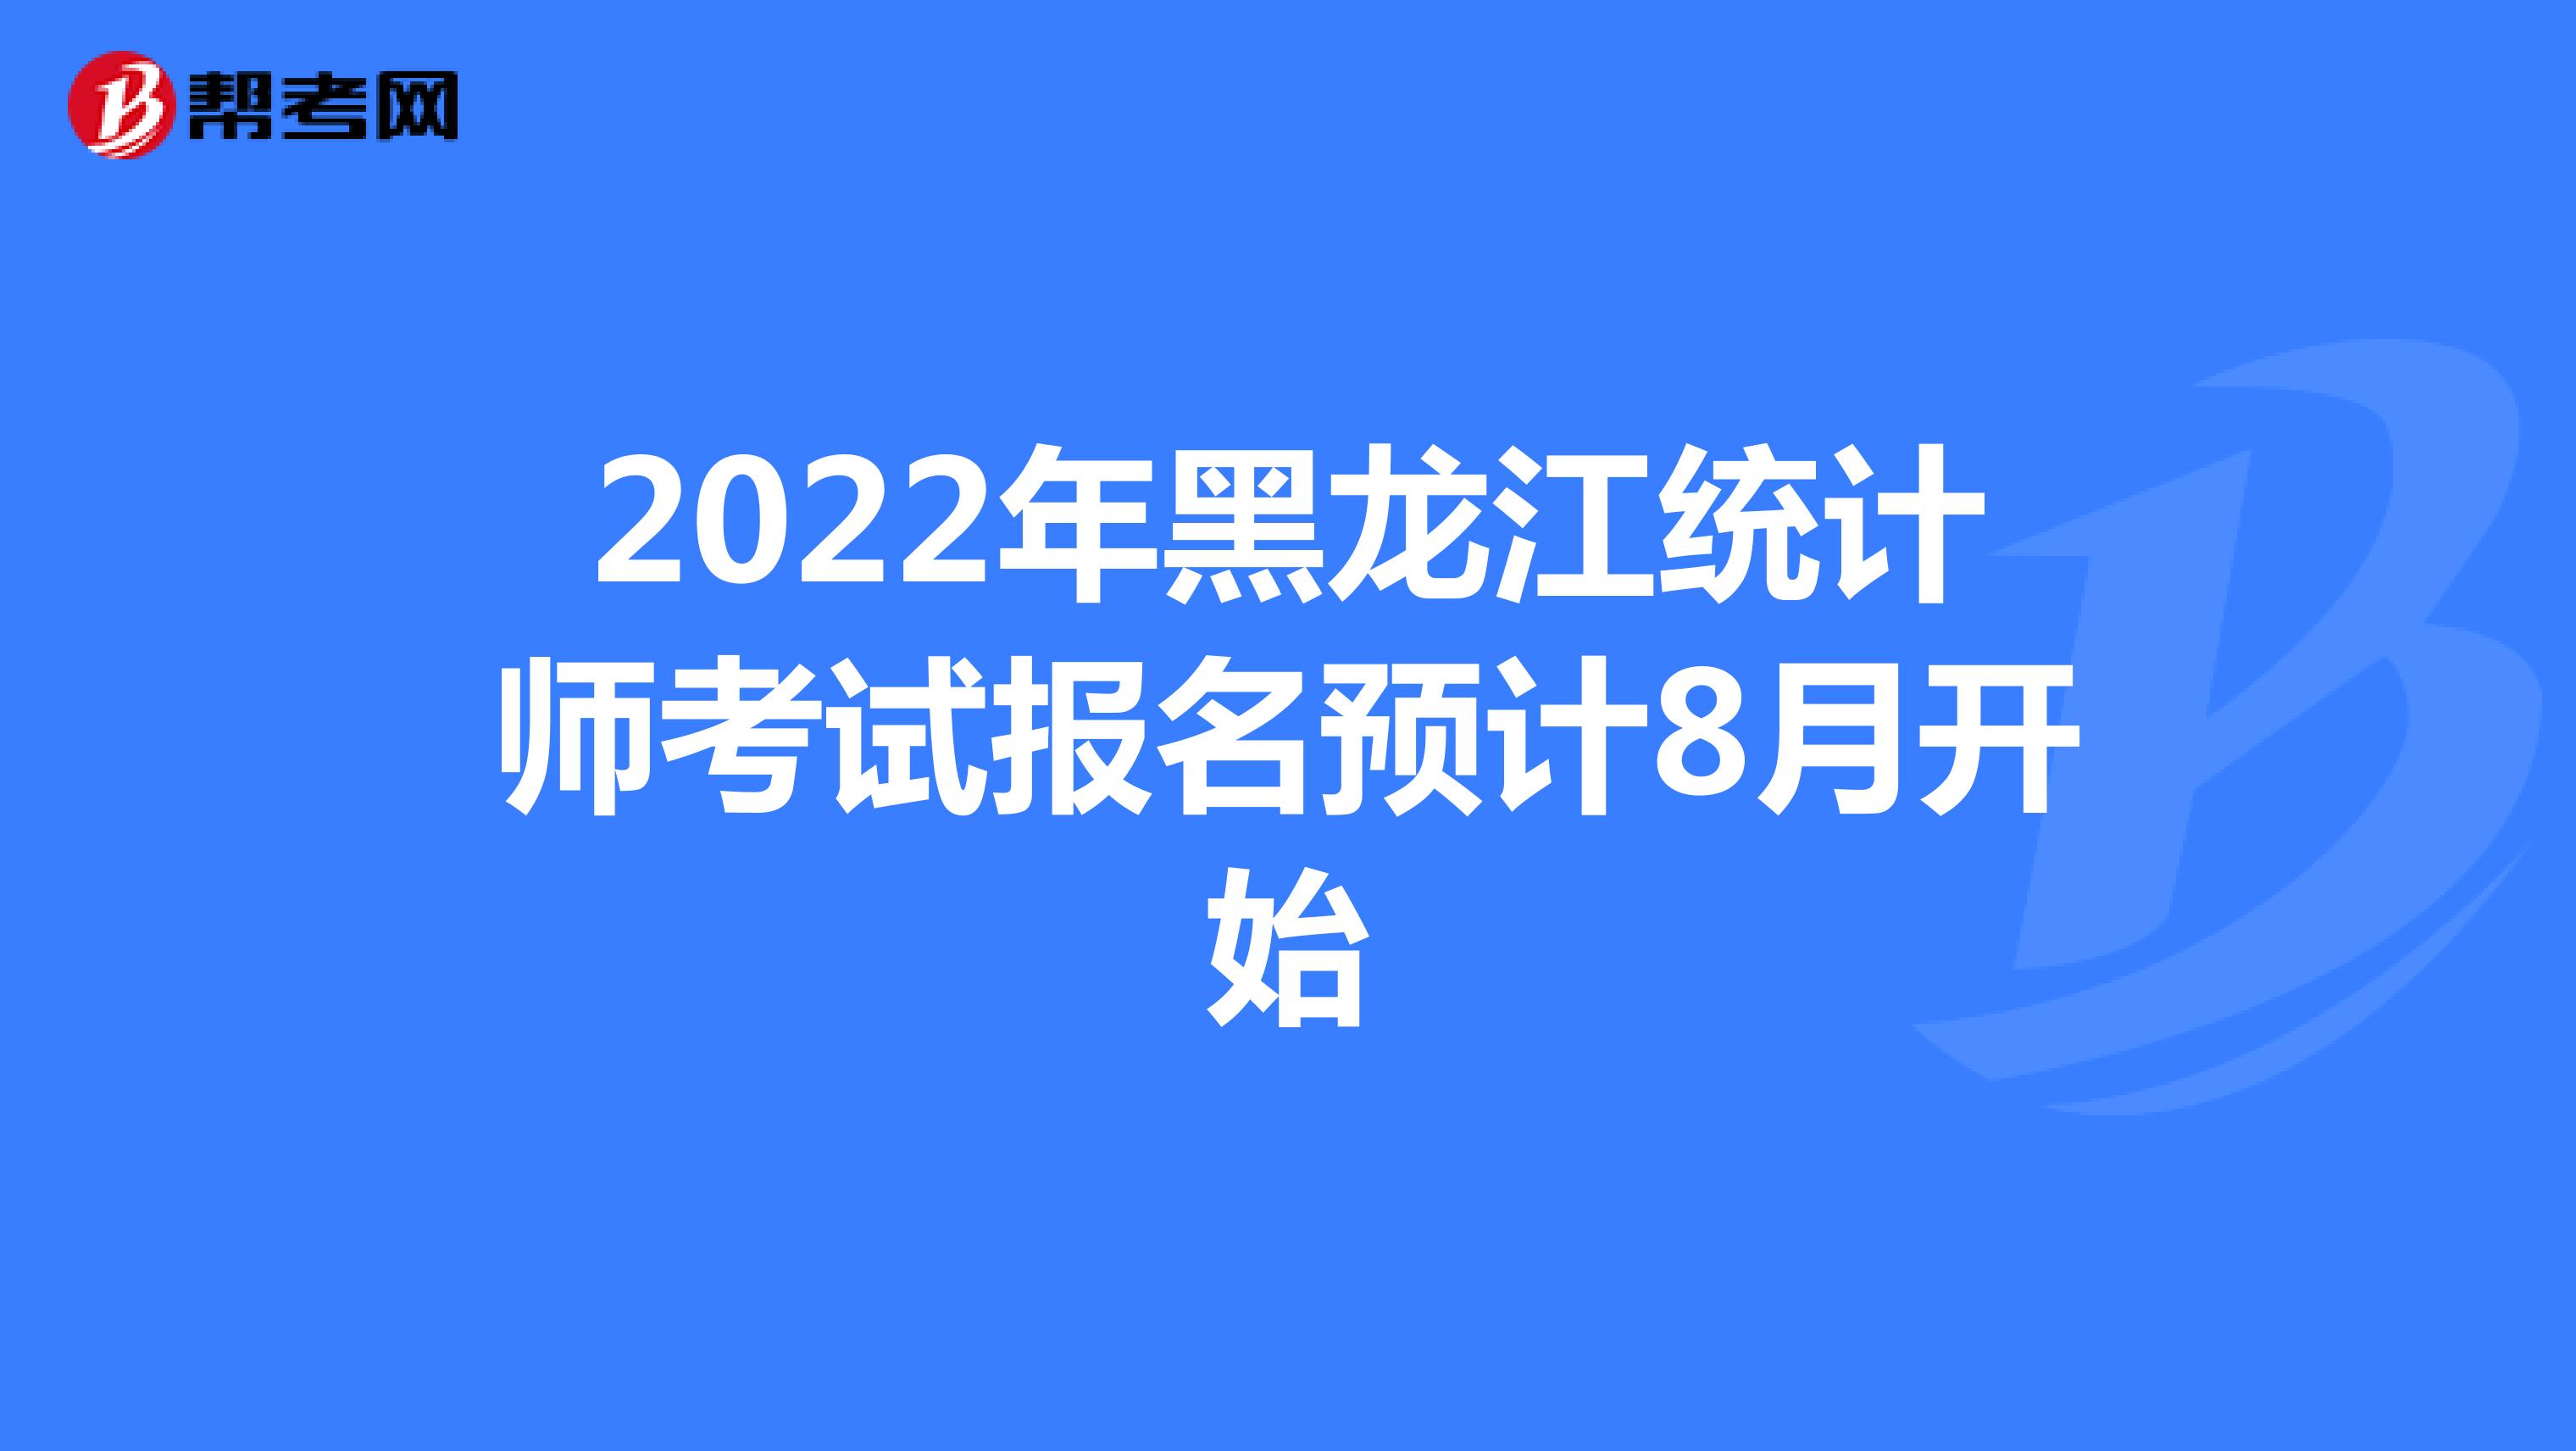 2022年黑龙江统计师考试报名预计8月开始